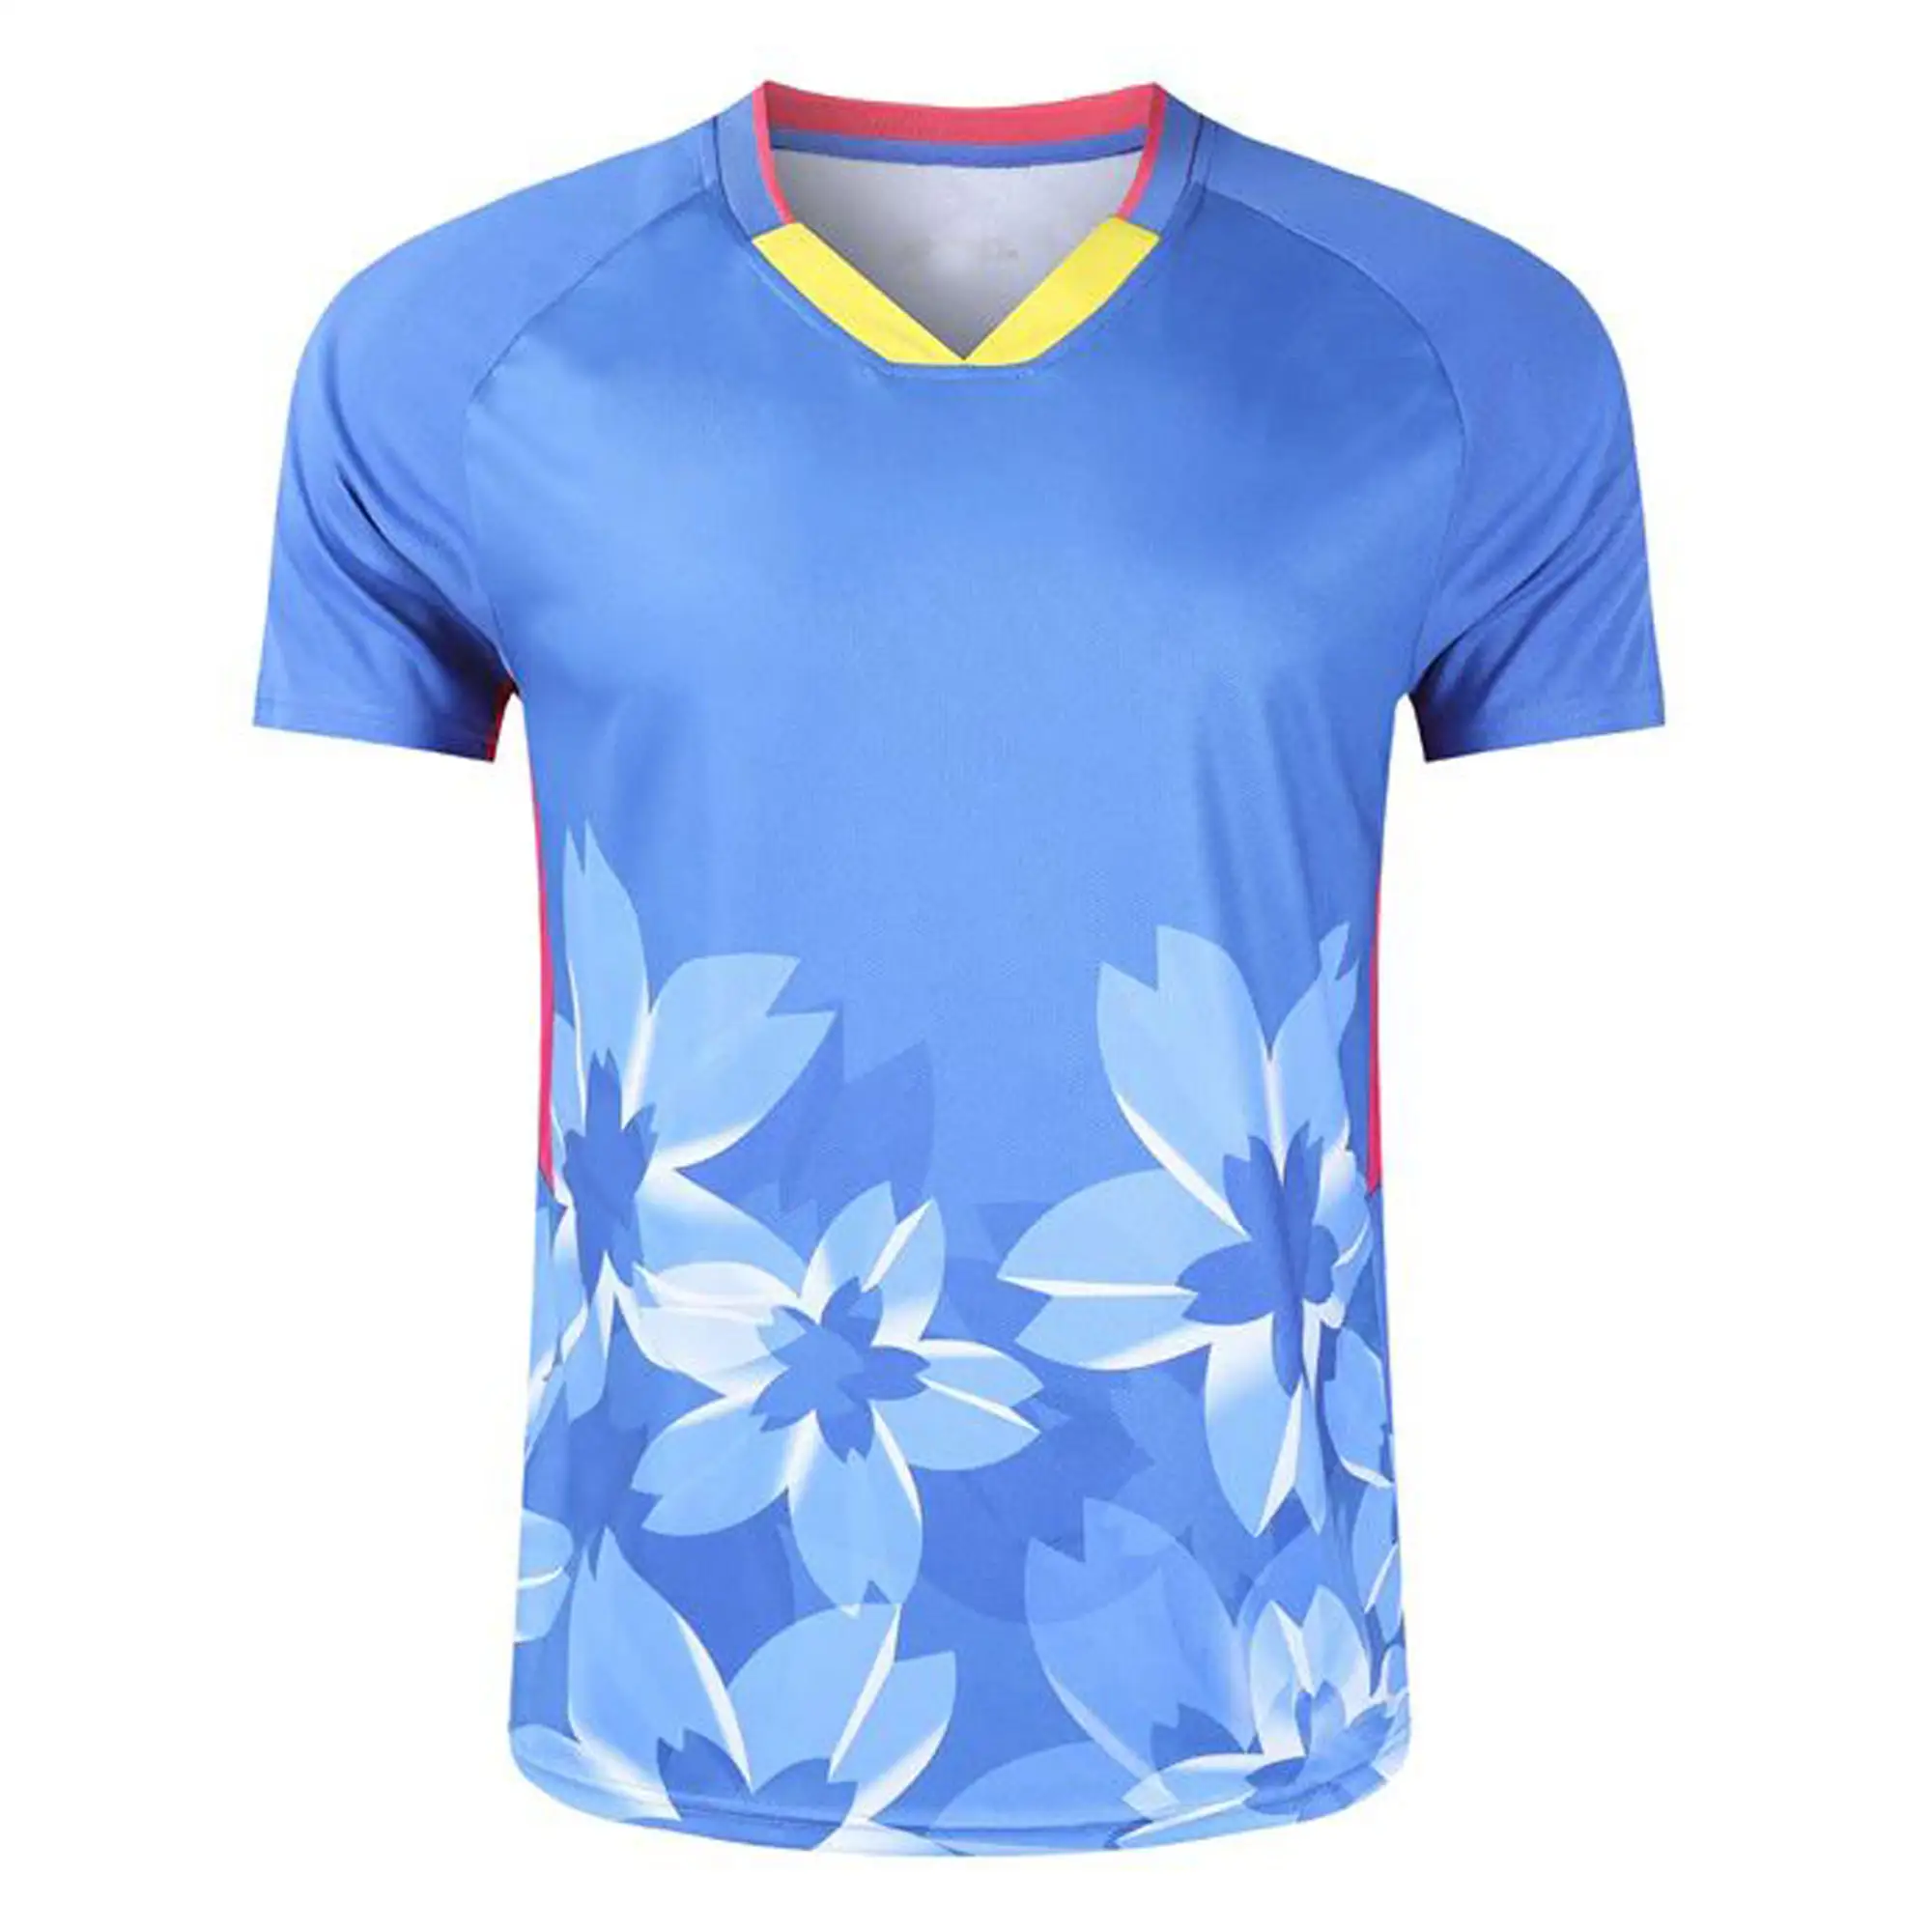 무료 샘플 반팔 승화 T 셔츠 저렴한 가격의 배구 유니폼 저지 맞춤형 로고가있는 비치 스포츠 셔츠